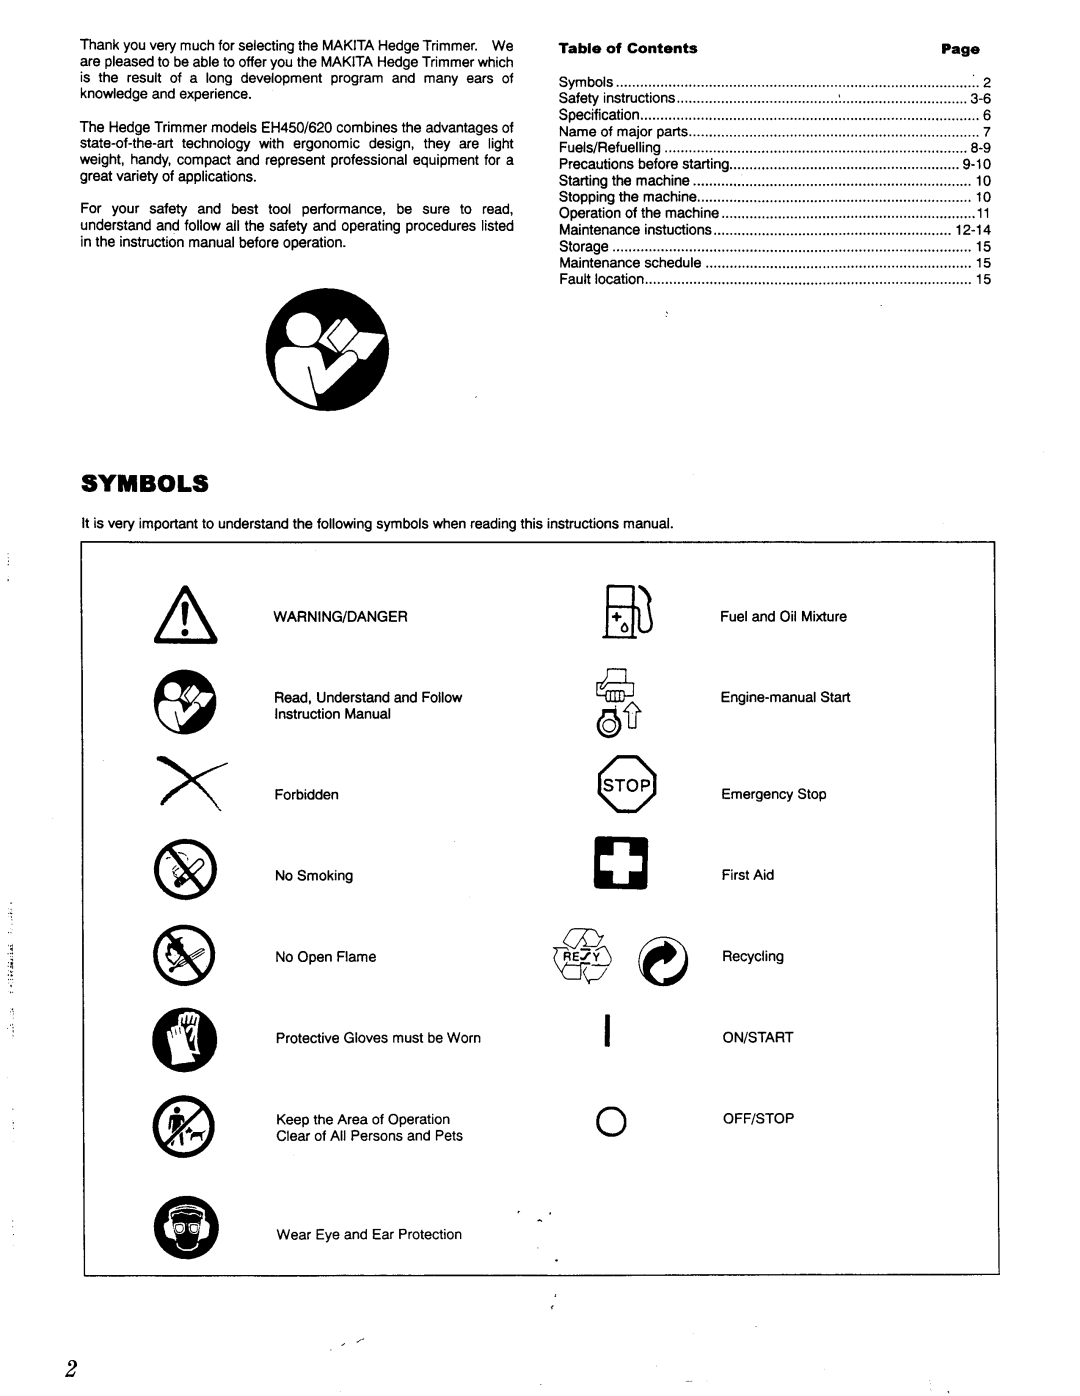 Makita EH 450, EH 620 manual Symbols, 12-14 